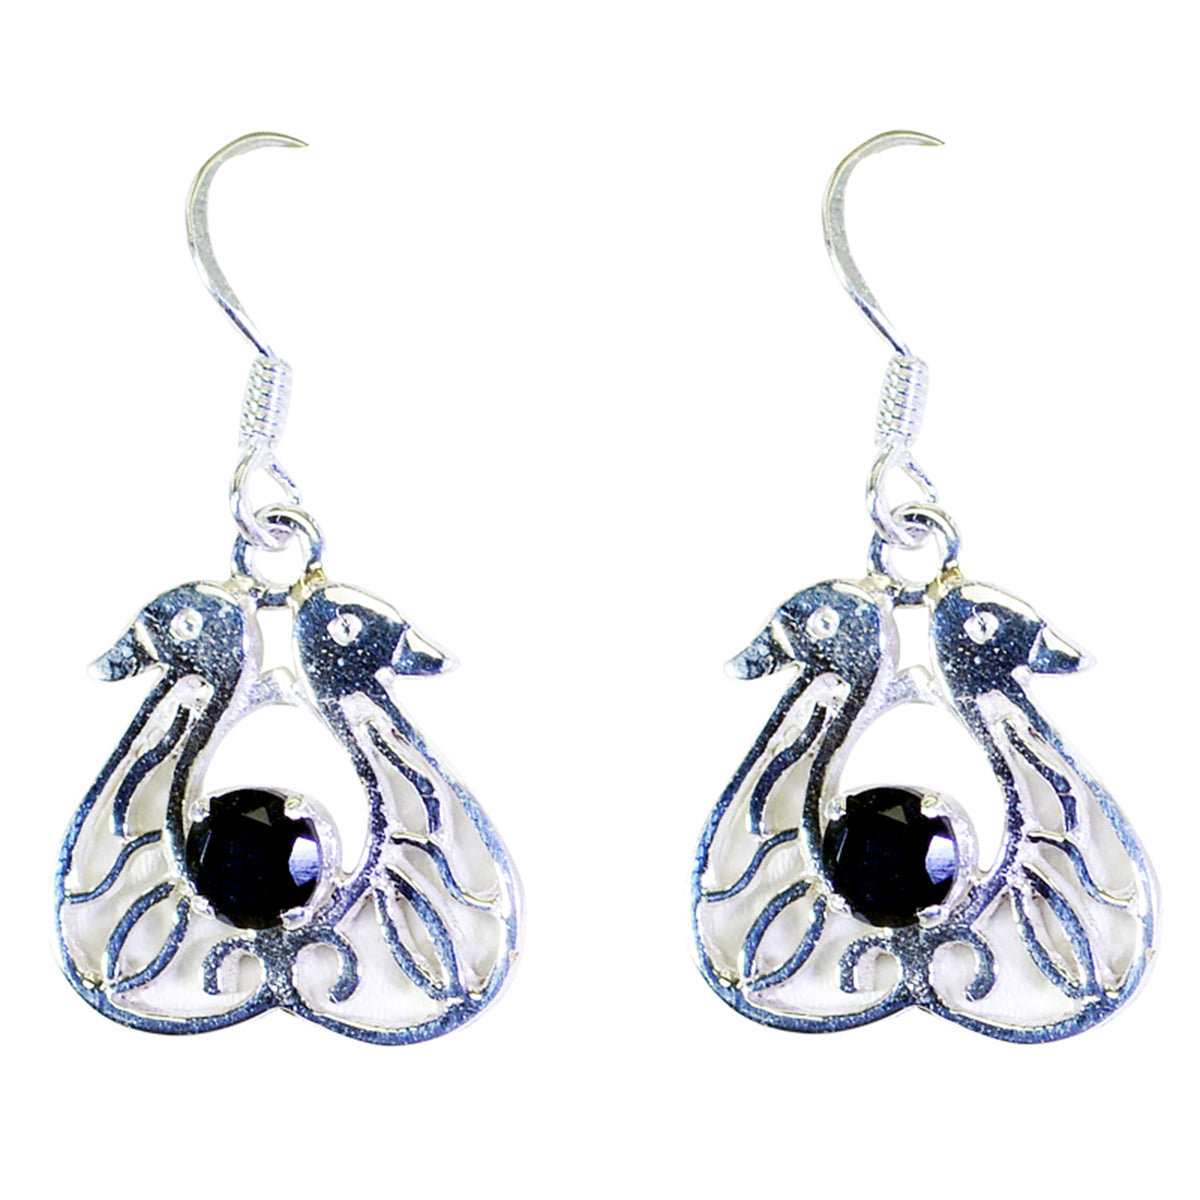 Riyo Good Gemstones round Faceted Black Onyx Silver Earrings handmade gift